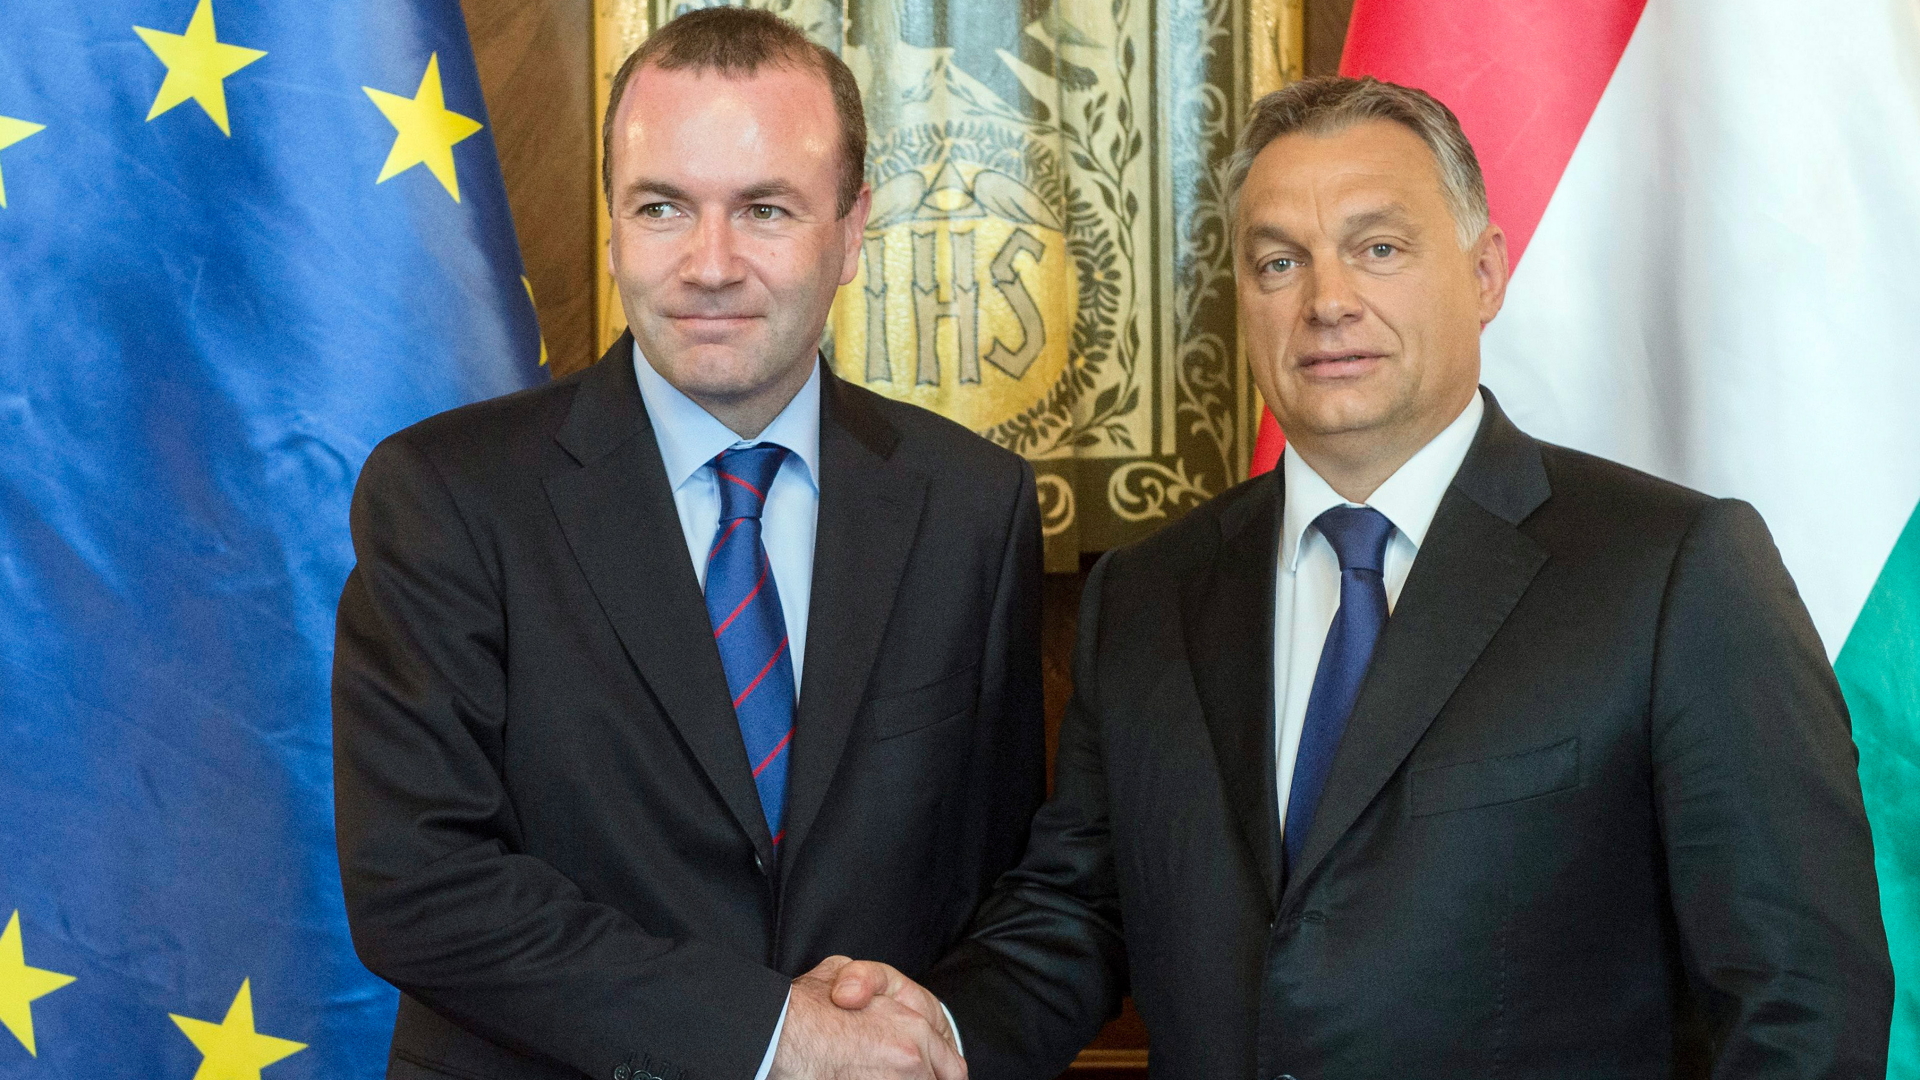 Ein Bild aus der Vergangenheit: EVP-Fraktionsvorsitzender Manfred Weber und Viktor Orban beim Handschlag (Foto vom 11. September 2015). | dpa